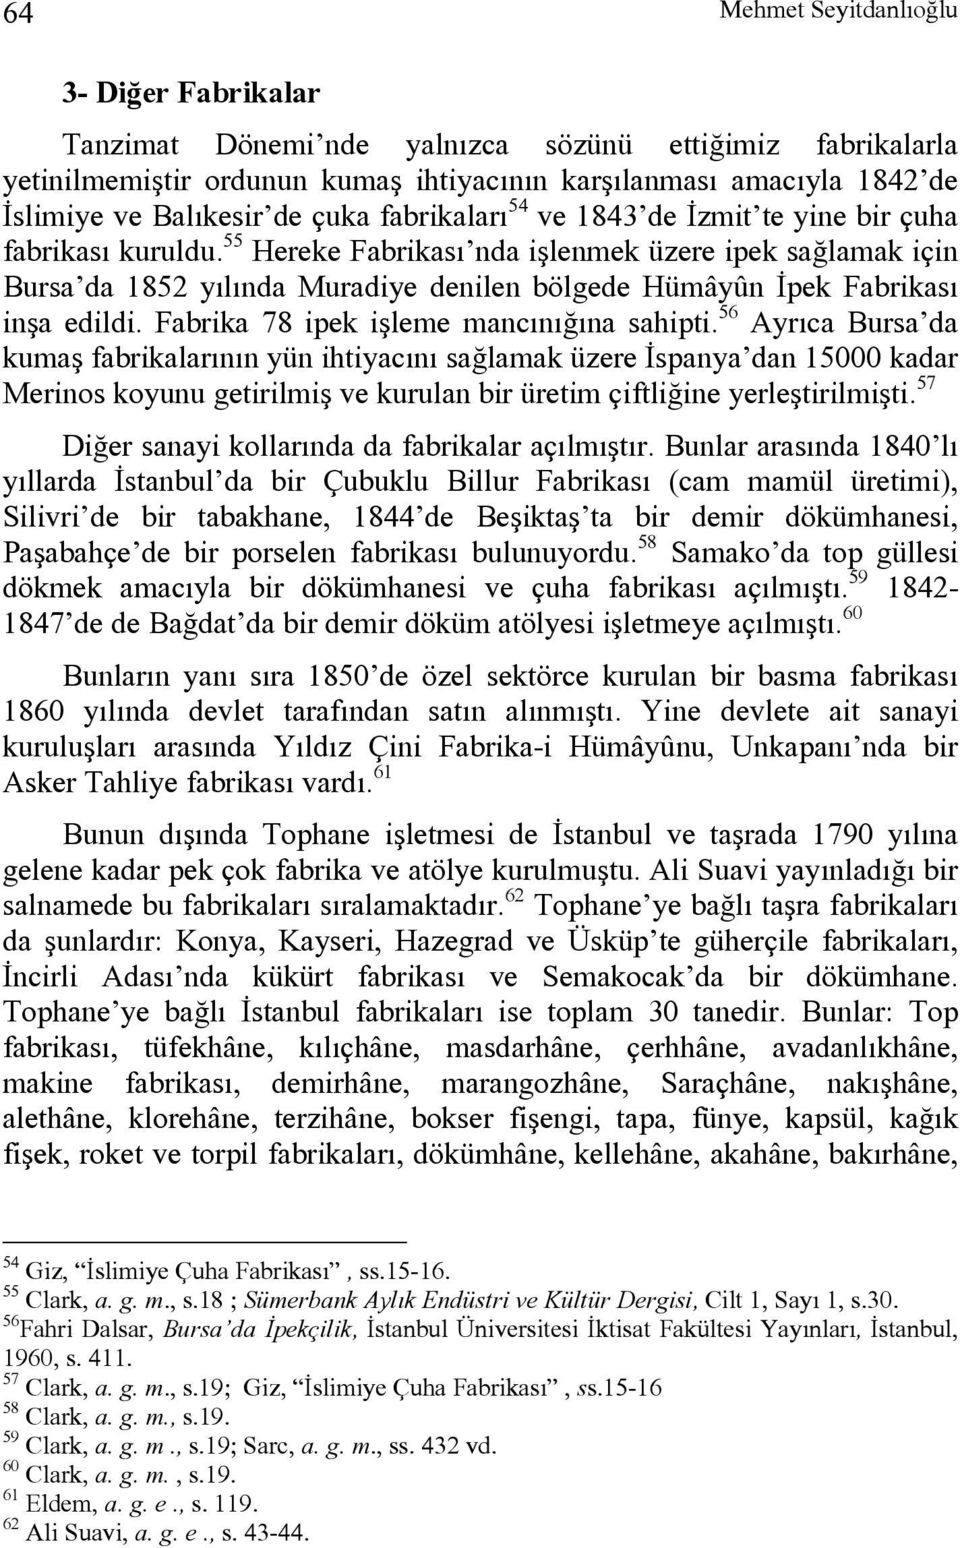 55 Hereke Fabrikası nda işlenmek üzere ipek sağlamak için Bursa da 1852 yılında Muradiye denilen bölgede Hümâyûn İpek Fabrikası inşa edildi. Fabrika 78 ipek işleme mancınığına sahipti.